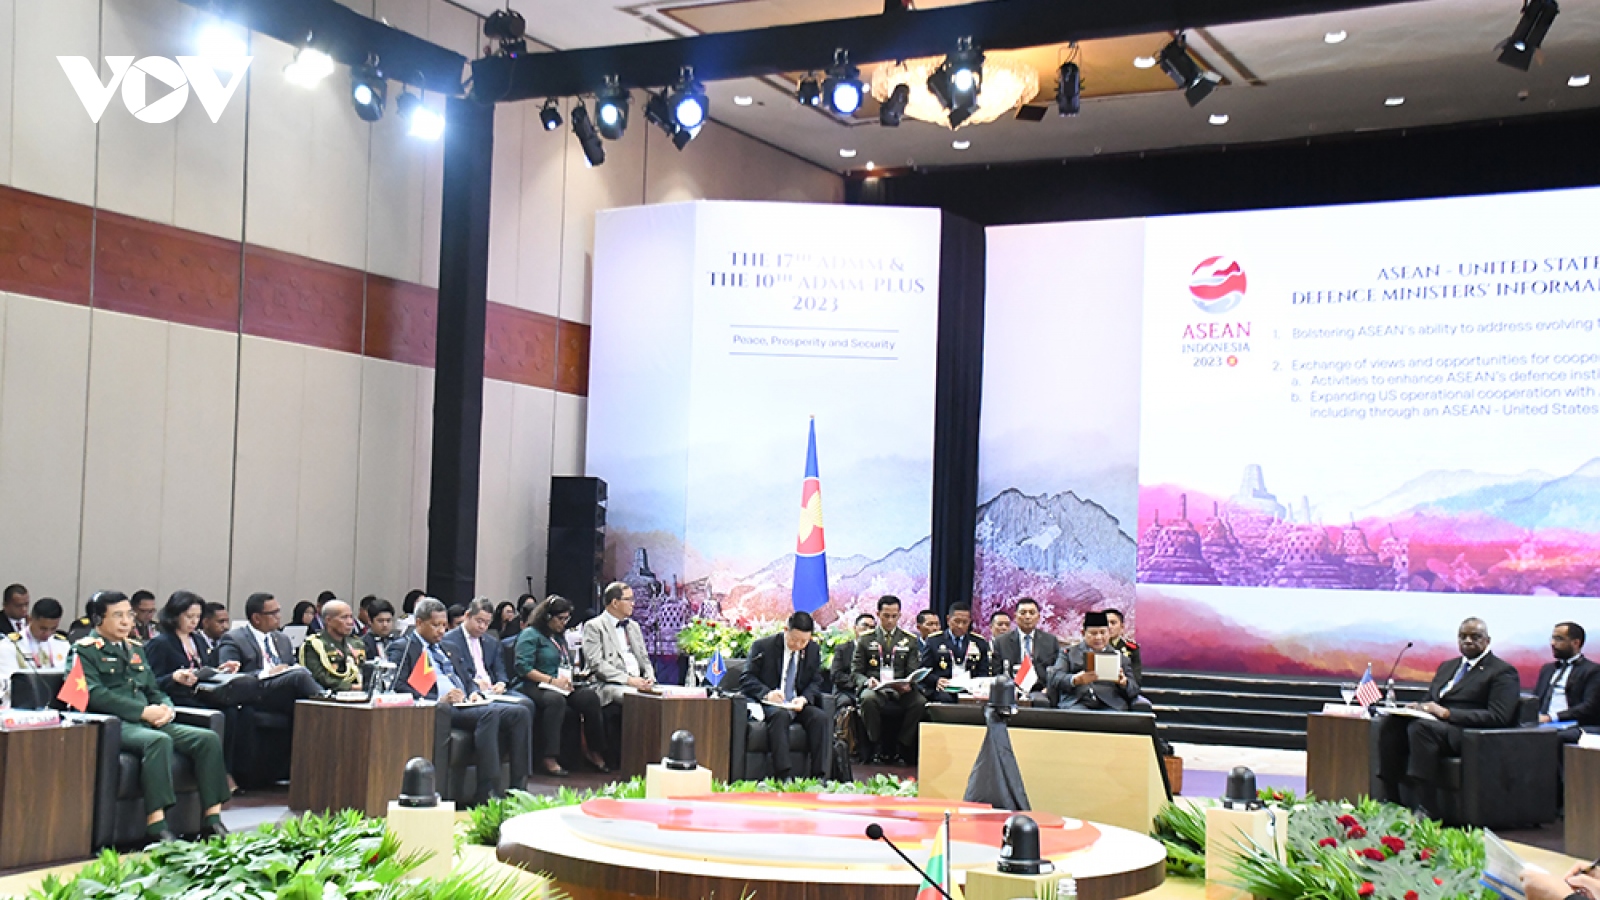 Hội nghị ADMM-17: Việt Nam tham gia tích cực vào hoạt động hợp tác ASEAN - Mỹ